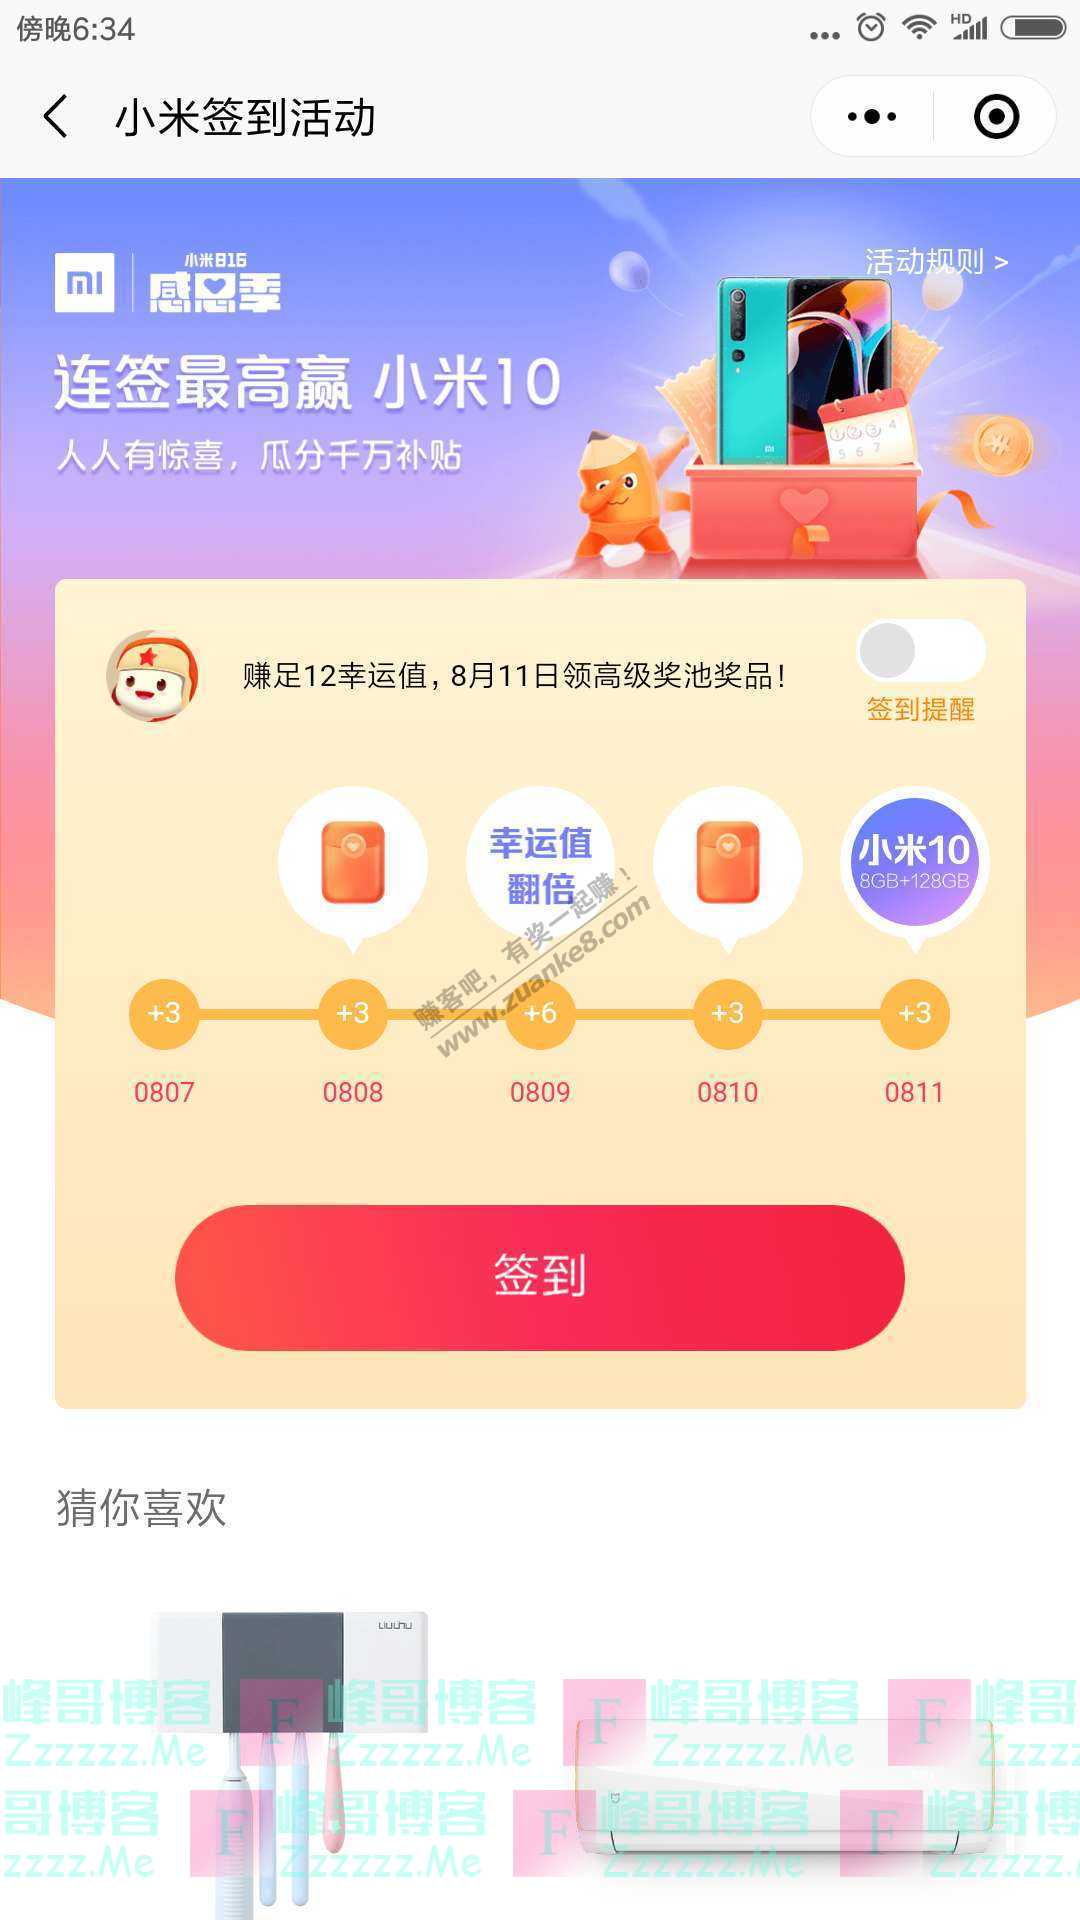 小米商城app连签最高赢小米10（截止8月11日）